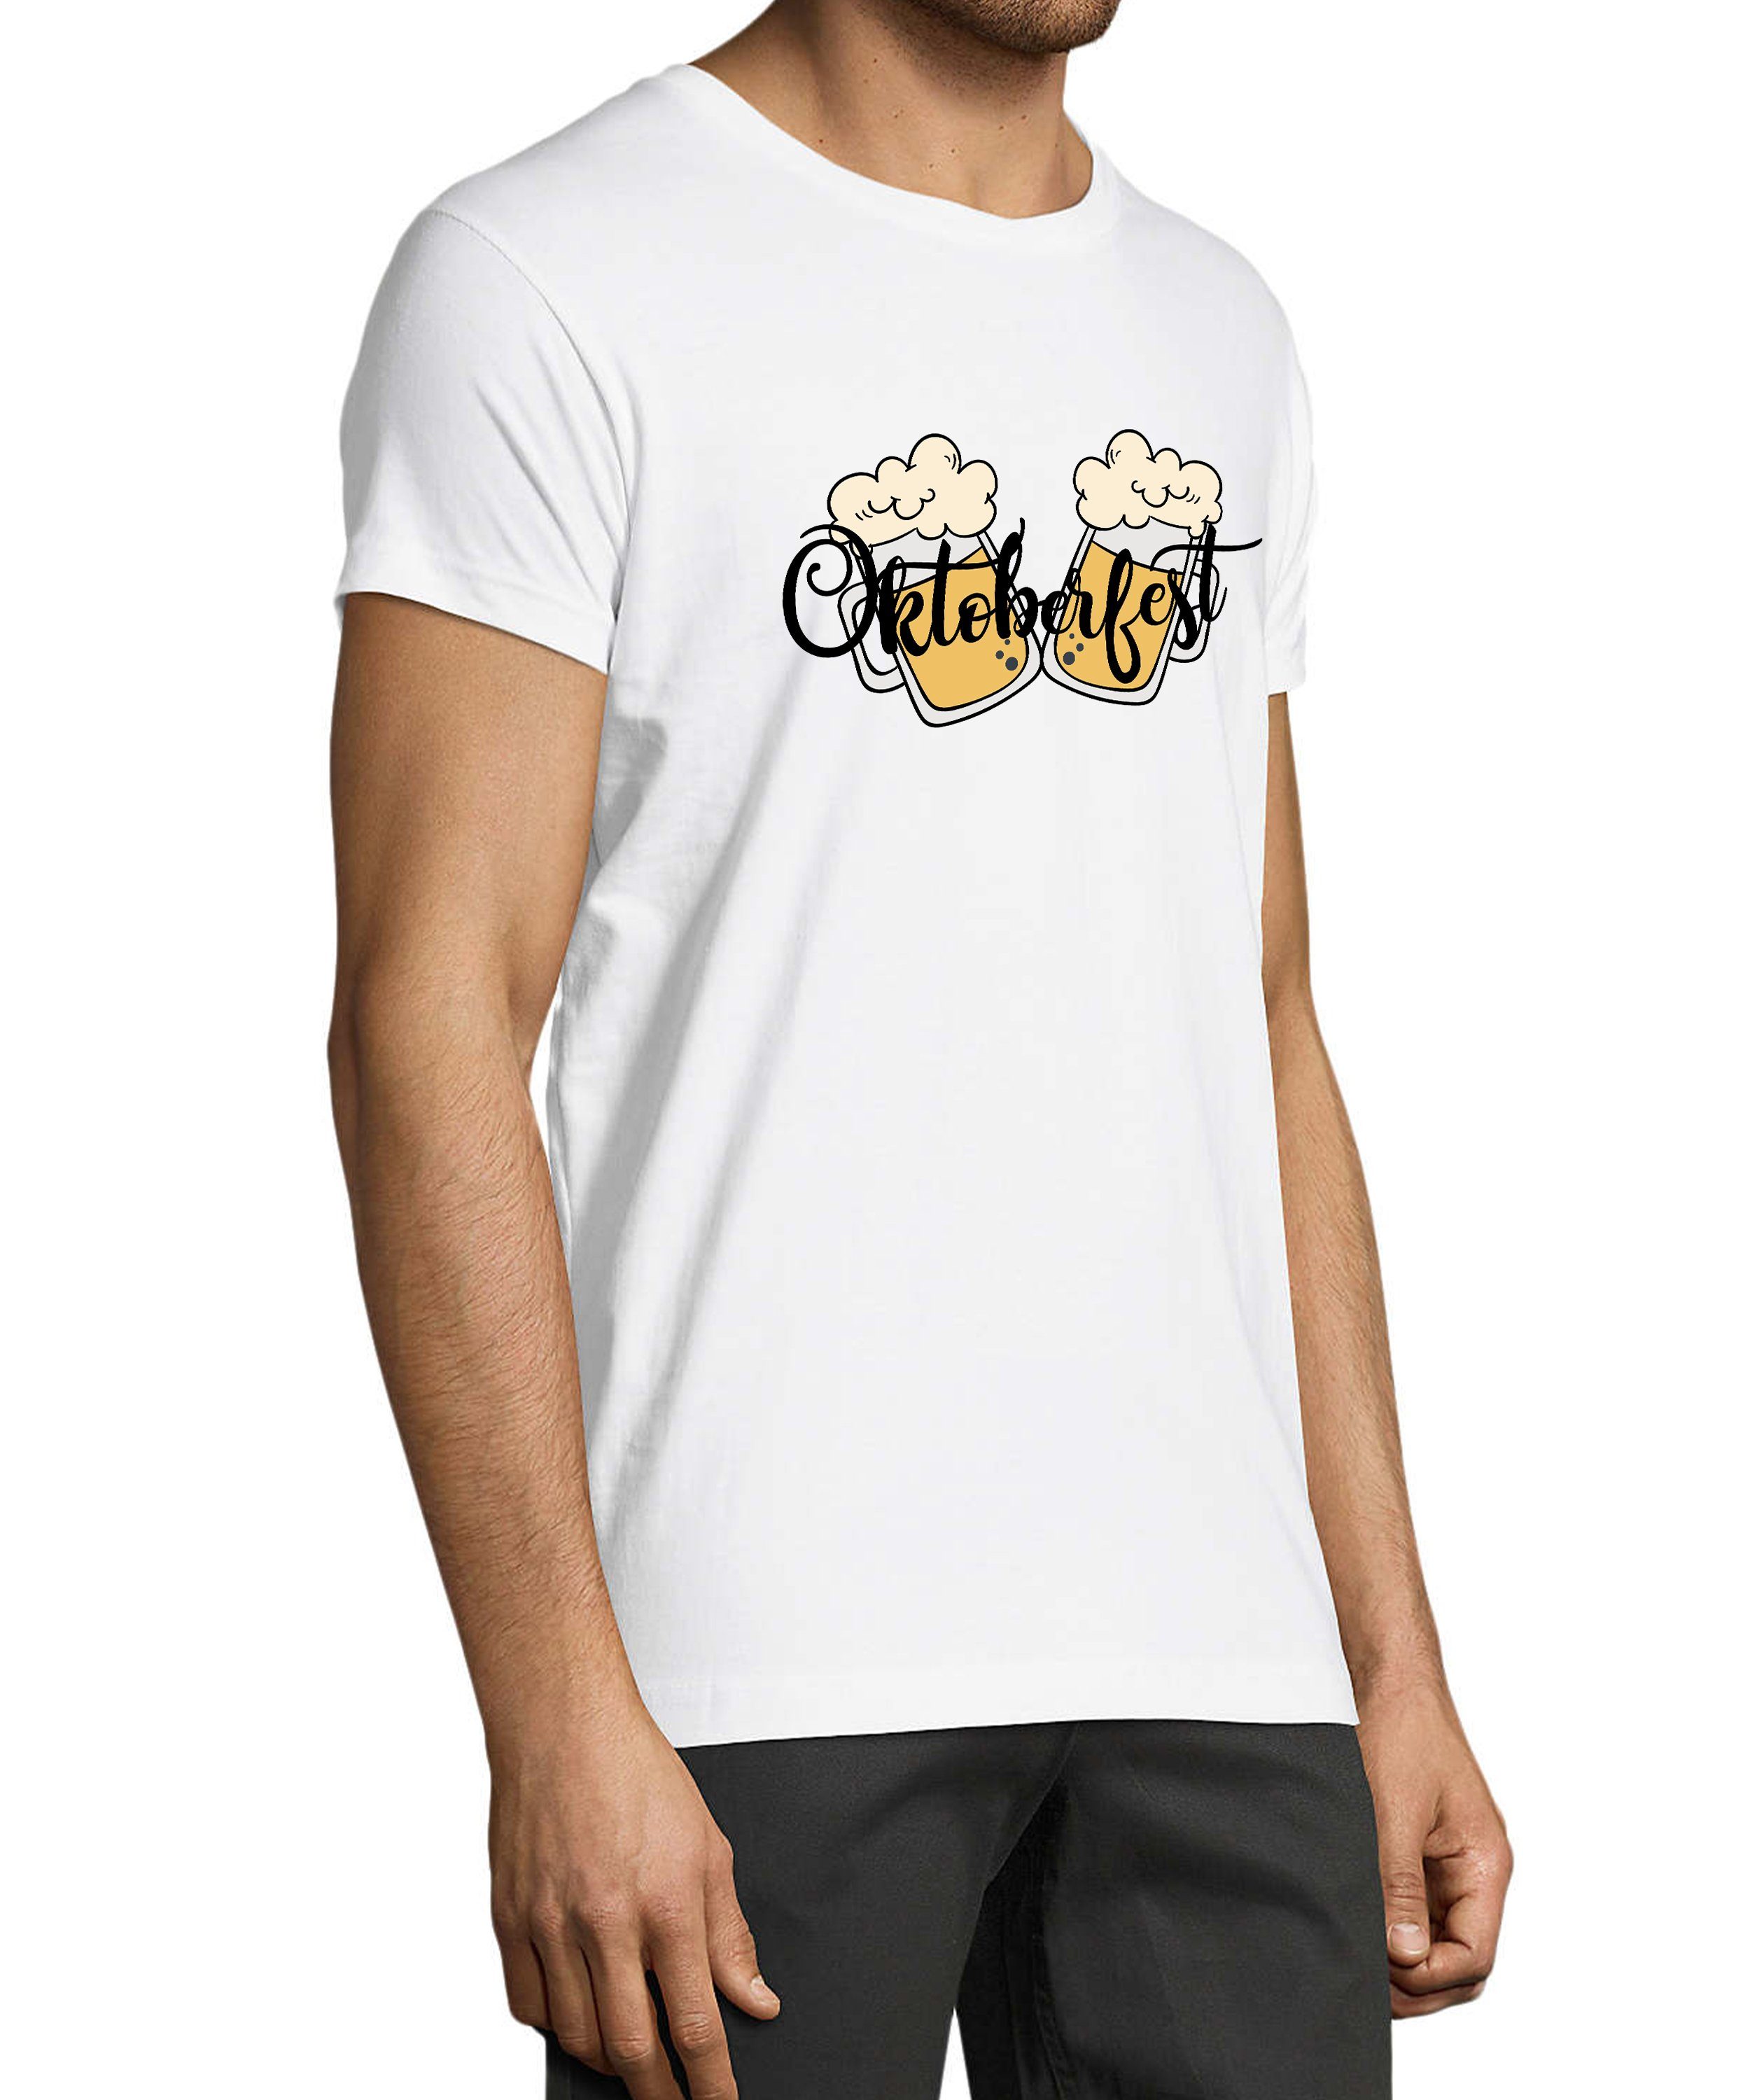 Party Regular Oktoberfest Shirt 2 Fit, Trinkshirt Baumwollshirt T-Shirt Herren MyDesign24 - Aufdruck weiss T-Shirt mit i326 Biergläser